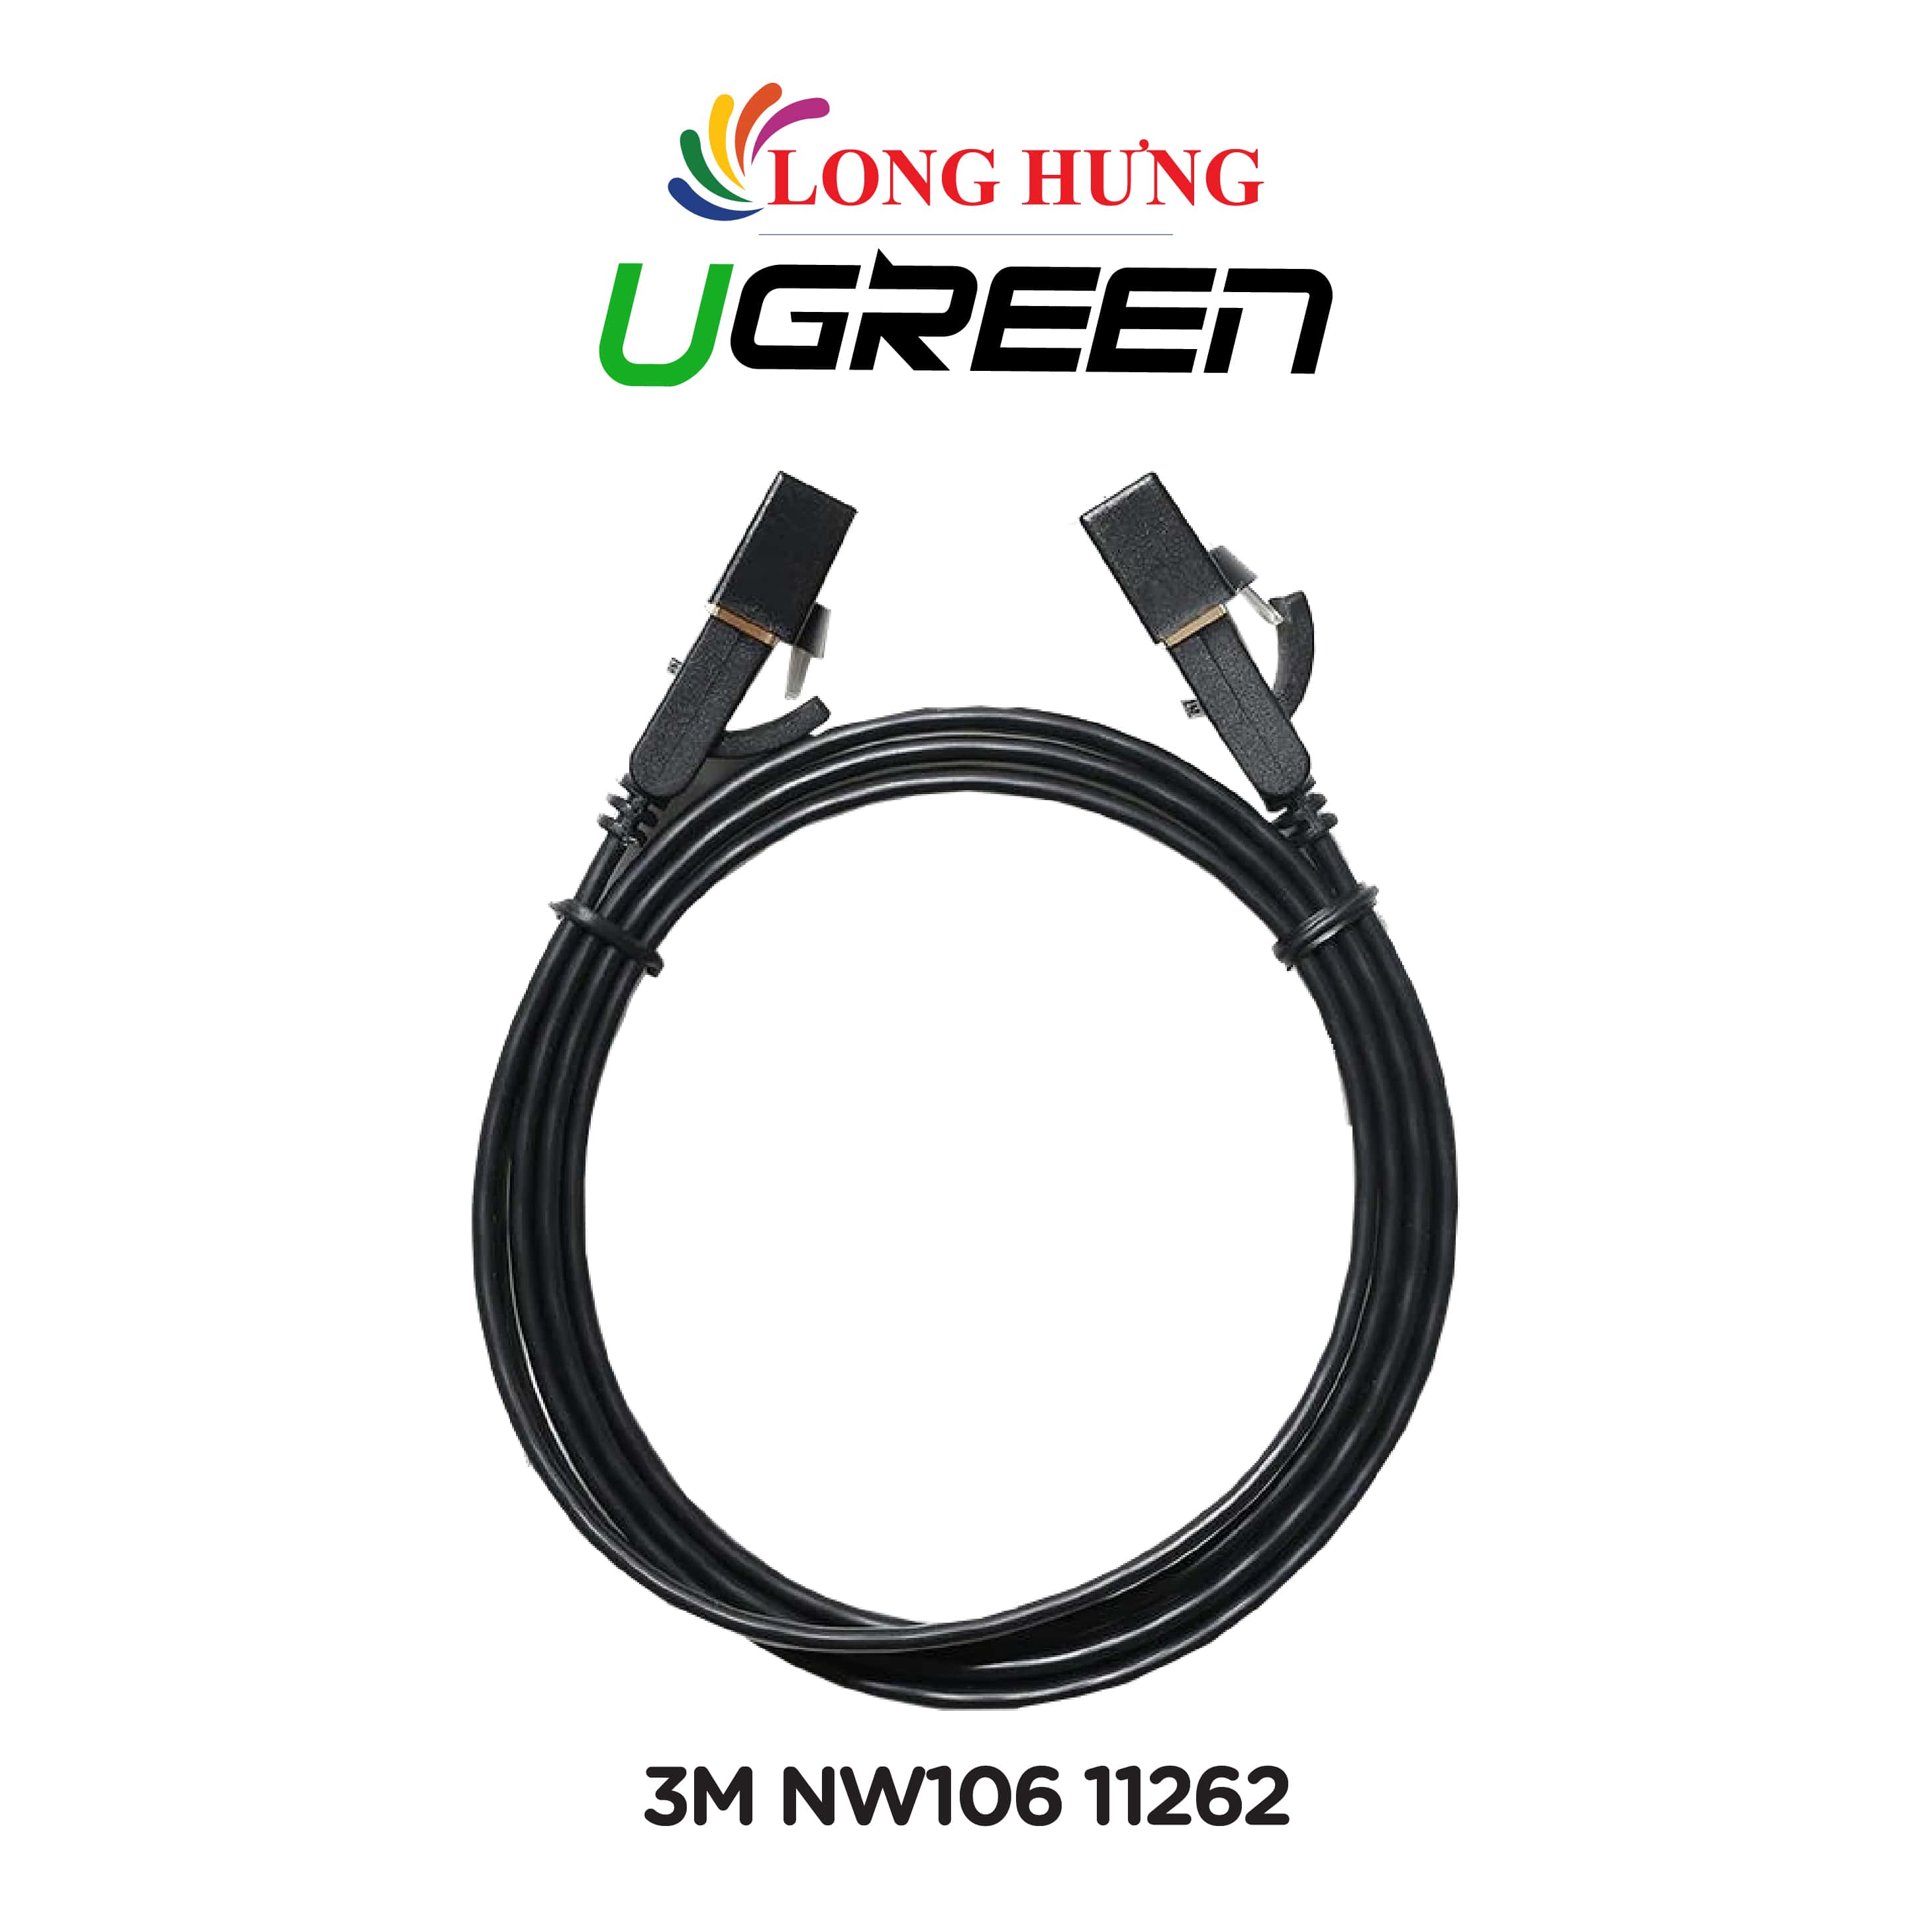 Cáp mạng dạng dẹt đen đúc sẵn Ugreen Cat7 STP Lan Cable Flat Design NW106 - Hàng chính hãng